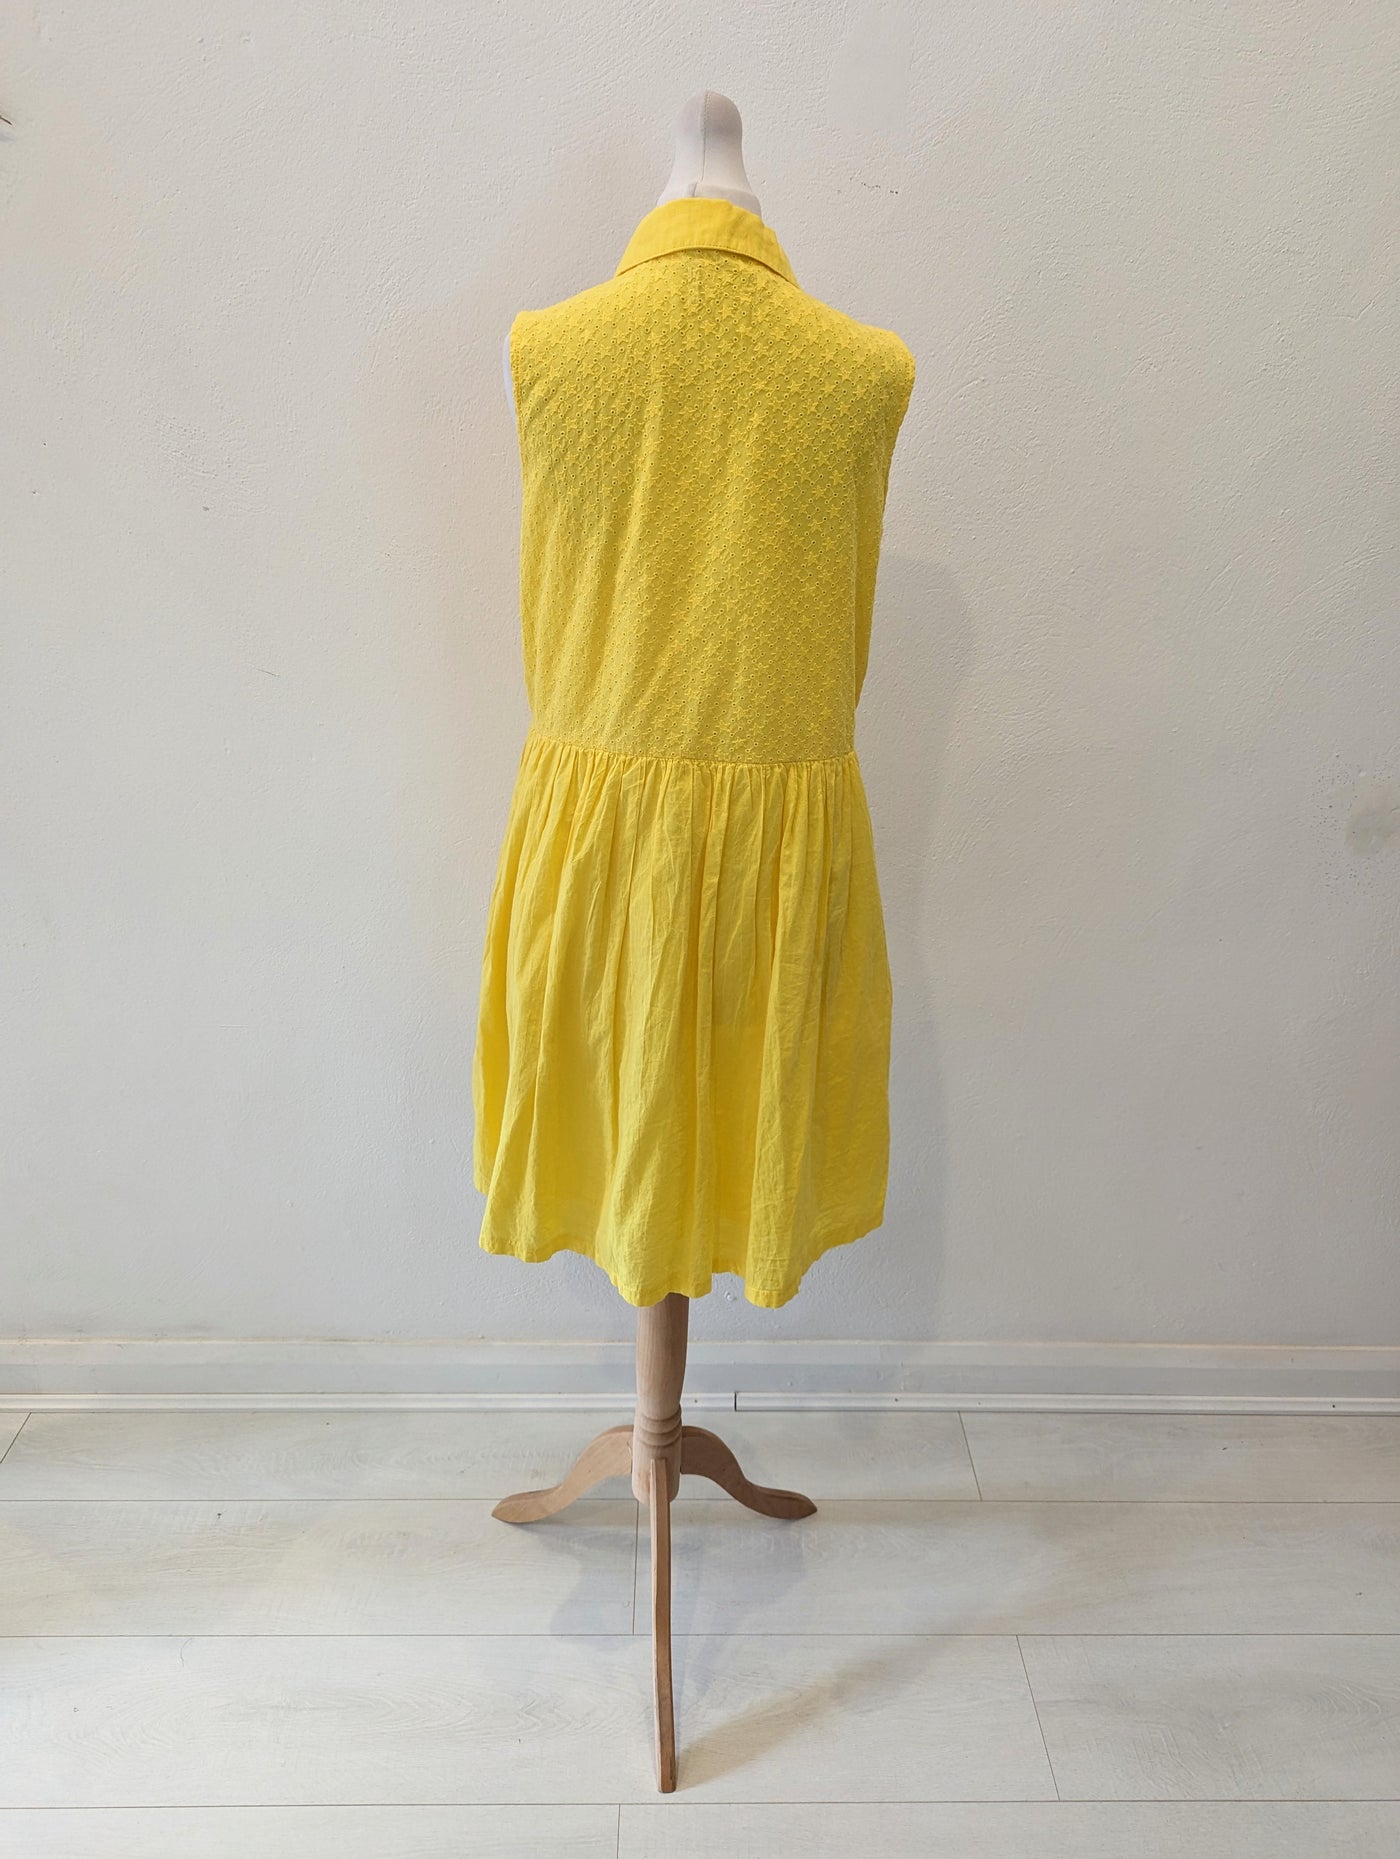 Hush Yellow Star dress 8